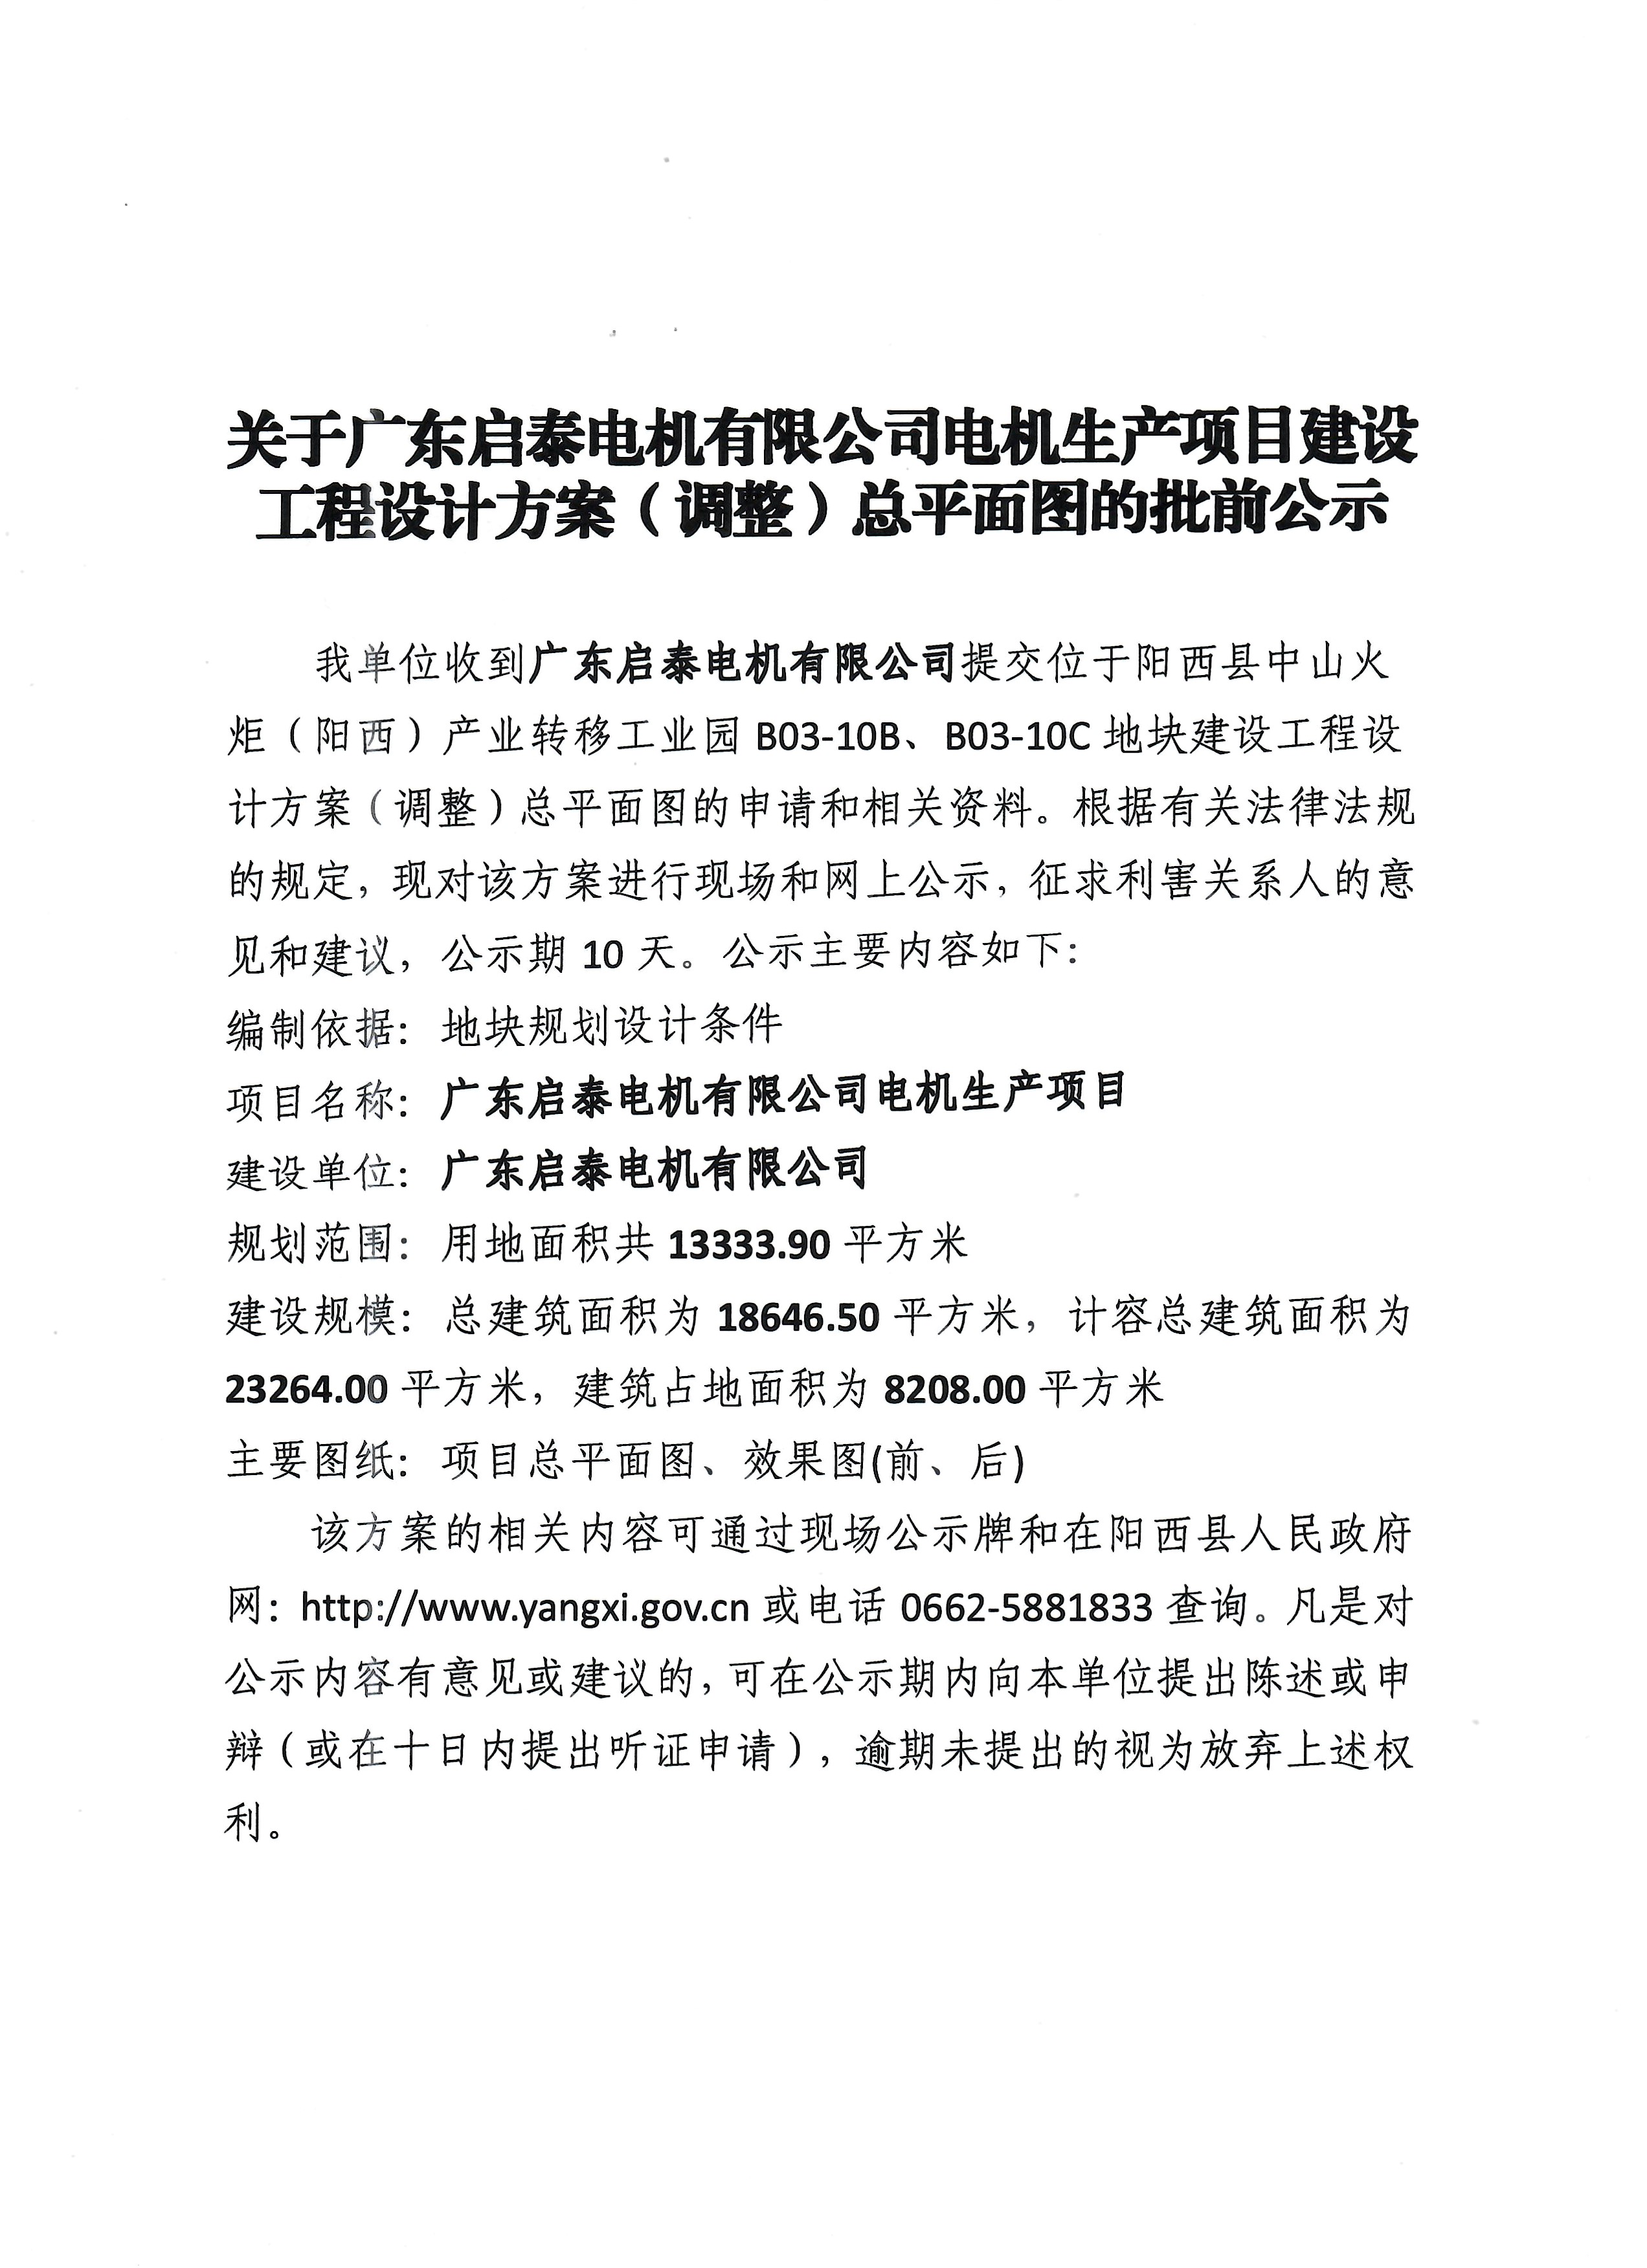 关于广东启泰电机有限公司电机生产项目建设工程设计方案(调整)总平面图的批前公示1.jpg